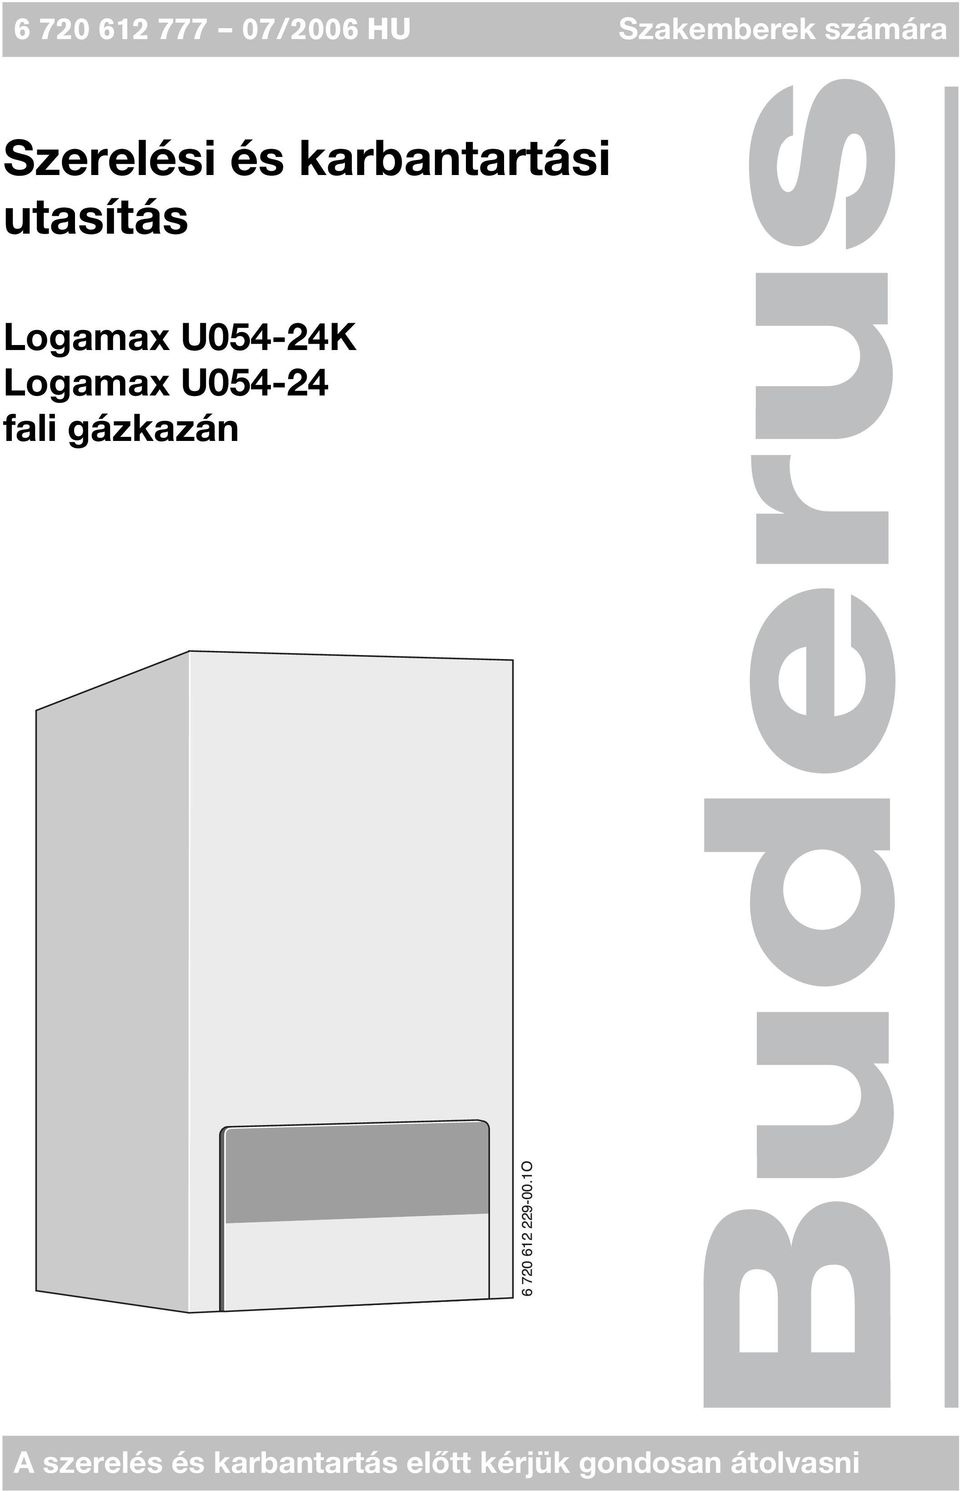 U054-24K Logamax U054-24 fali gázkazán 6 720 612